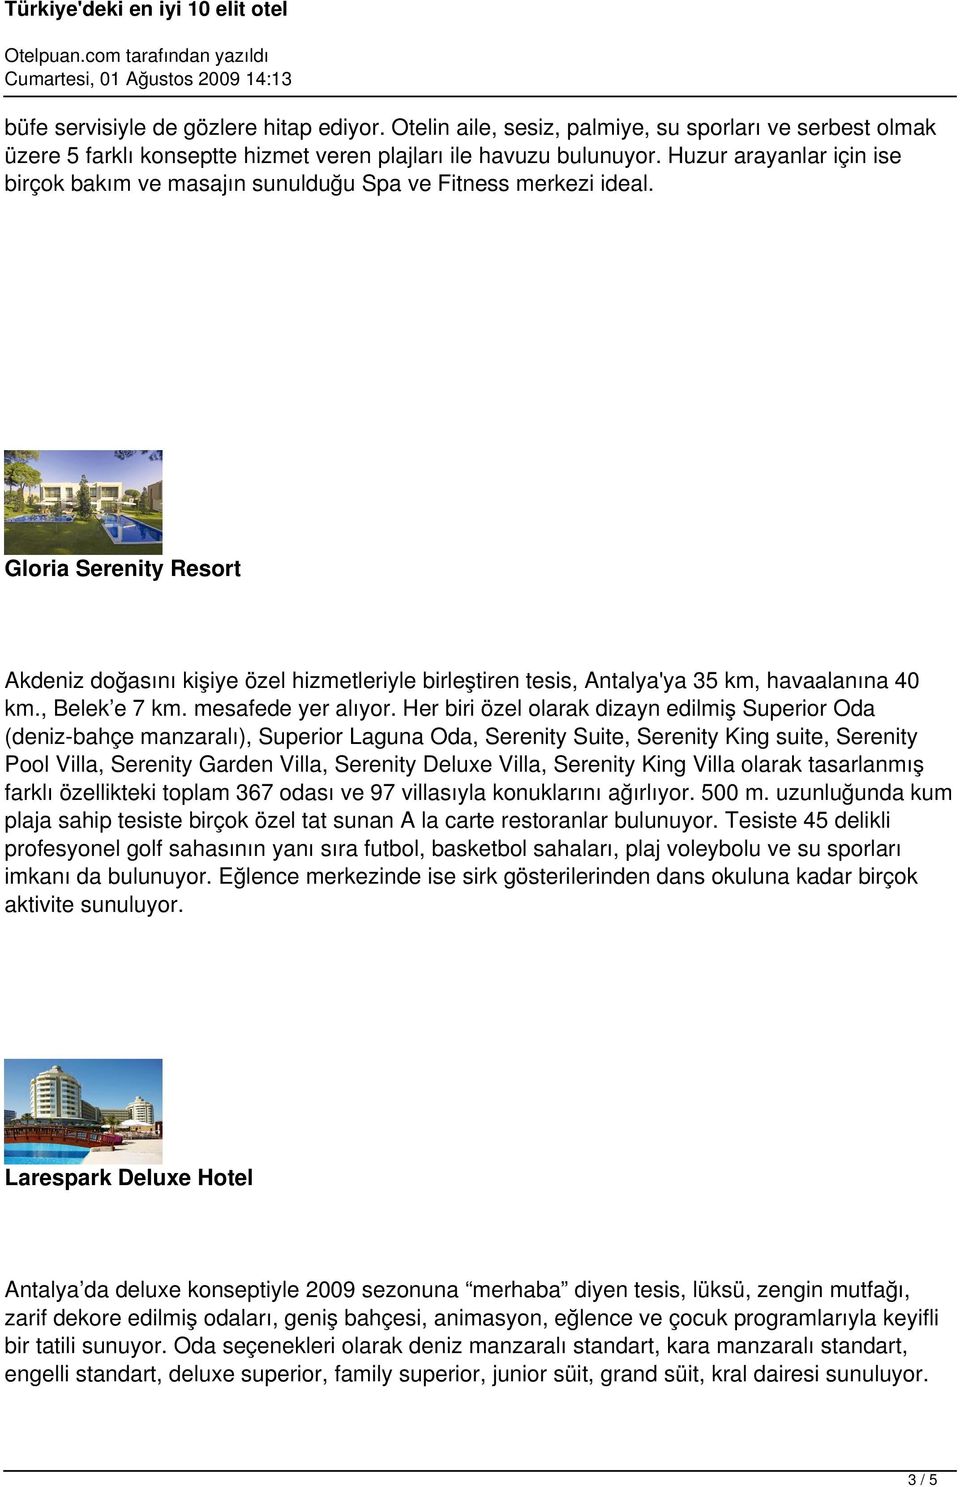 Gloria Serenity Resort Akdeniz doğasını kişiye özel hizmetleriyle birleştiren tesis, Antalya'ya 35 km, havaalanına 40 km., Belek e 7 km. mesafede yer alıyor.